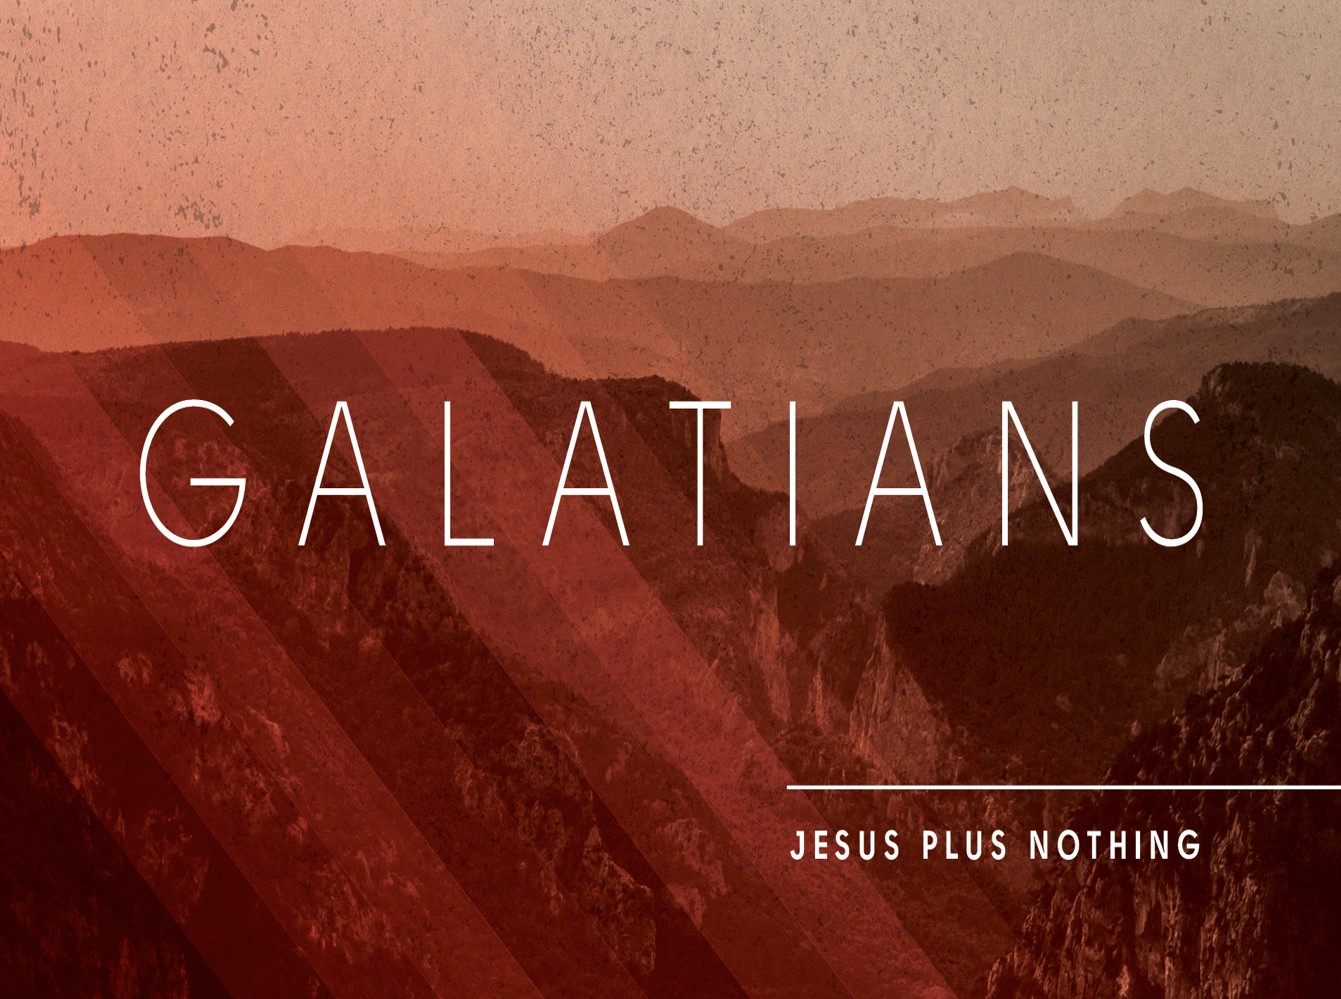 Galatians 4:1-7